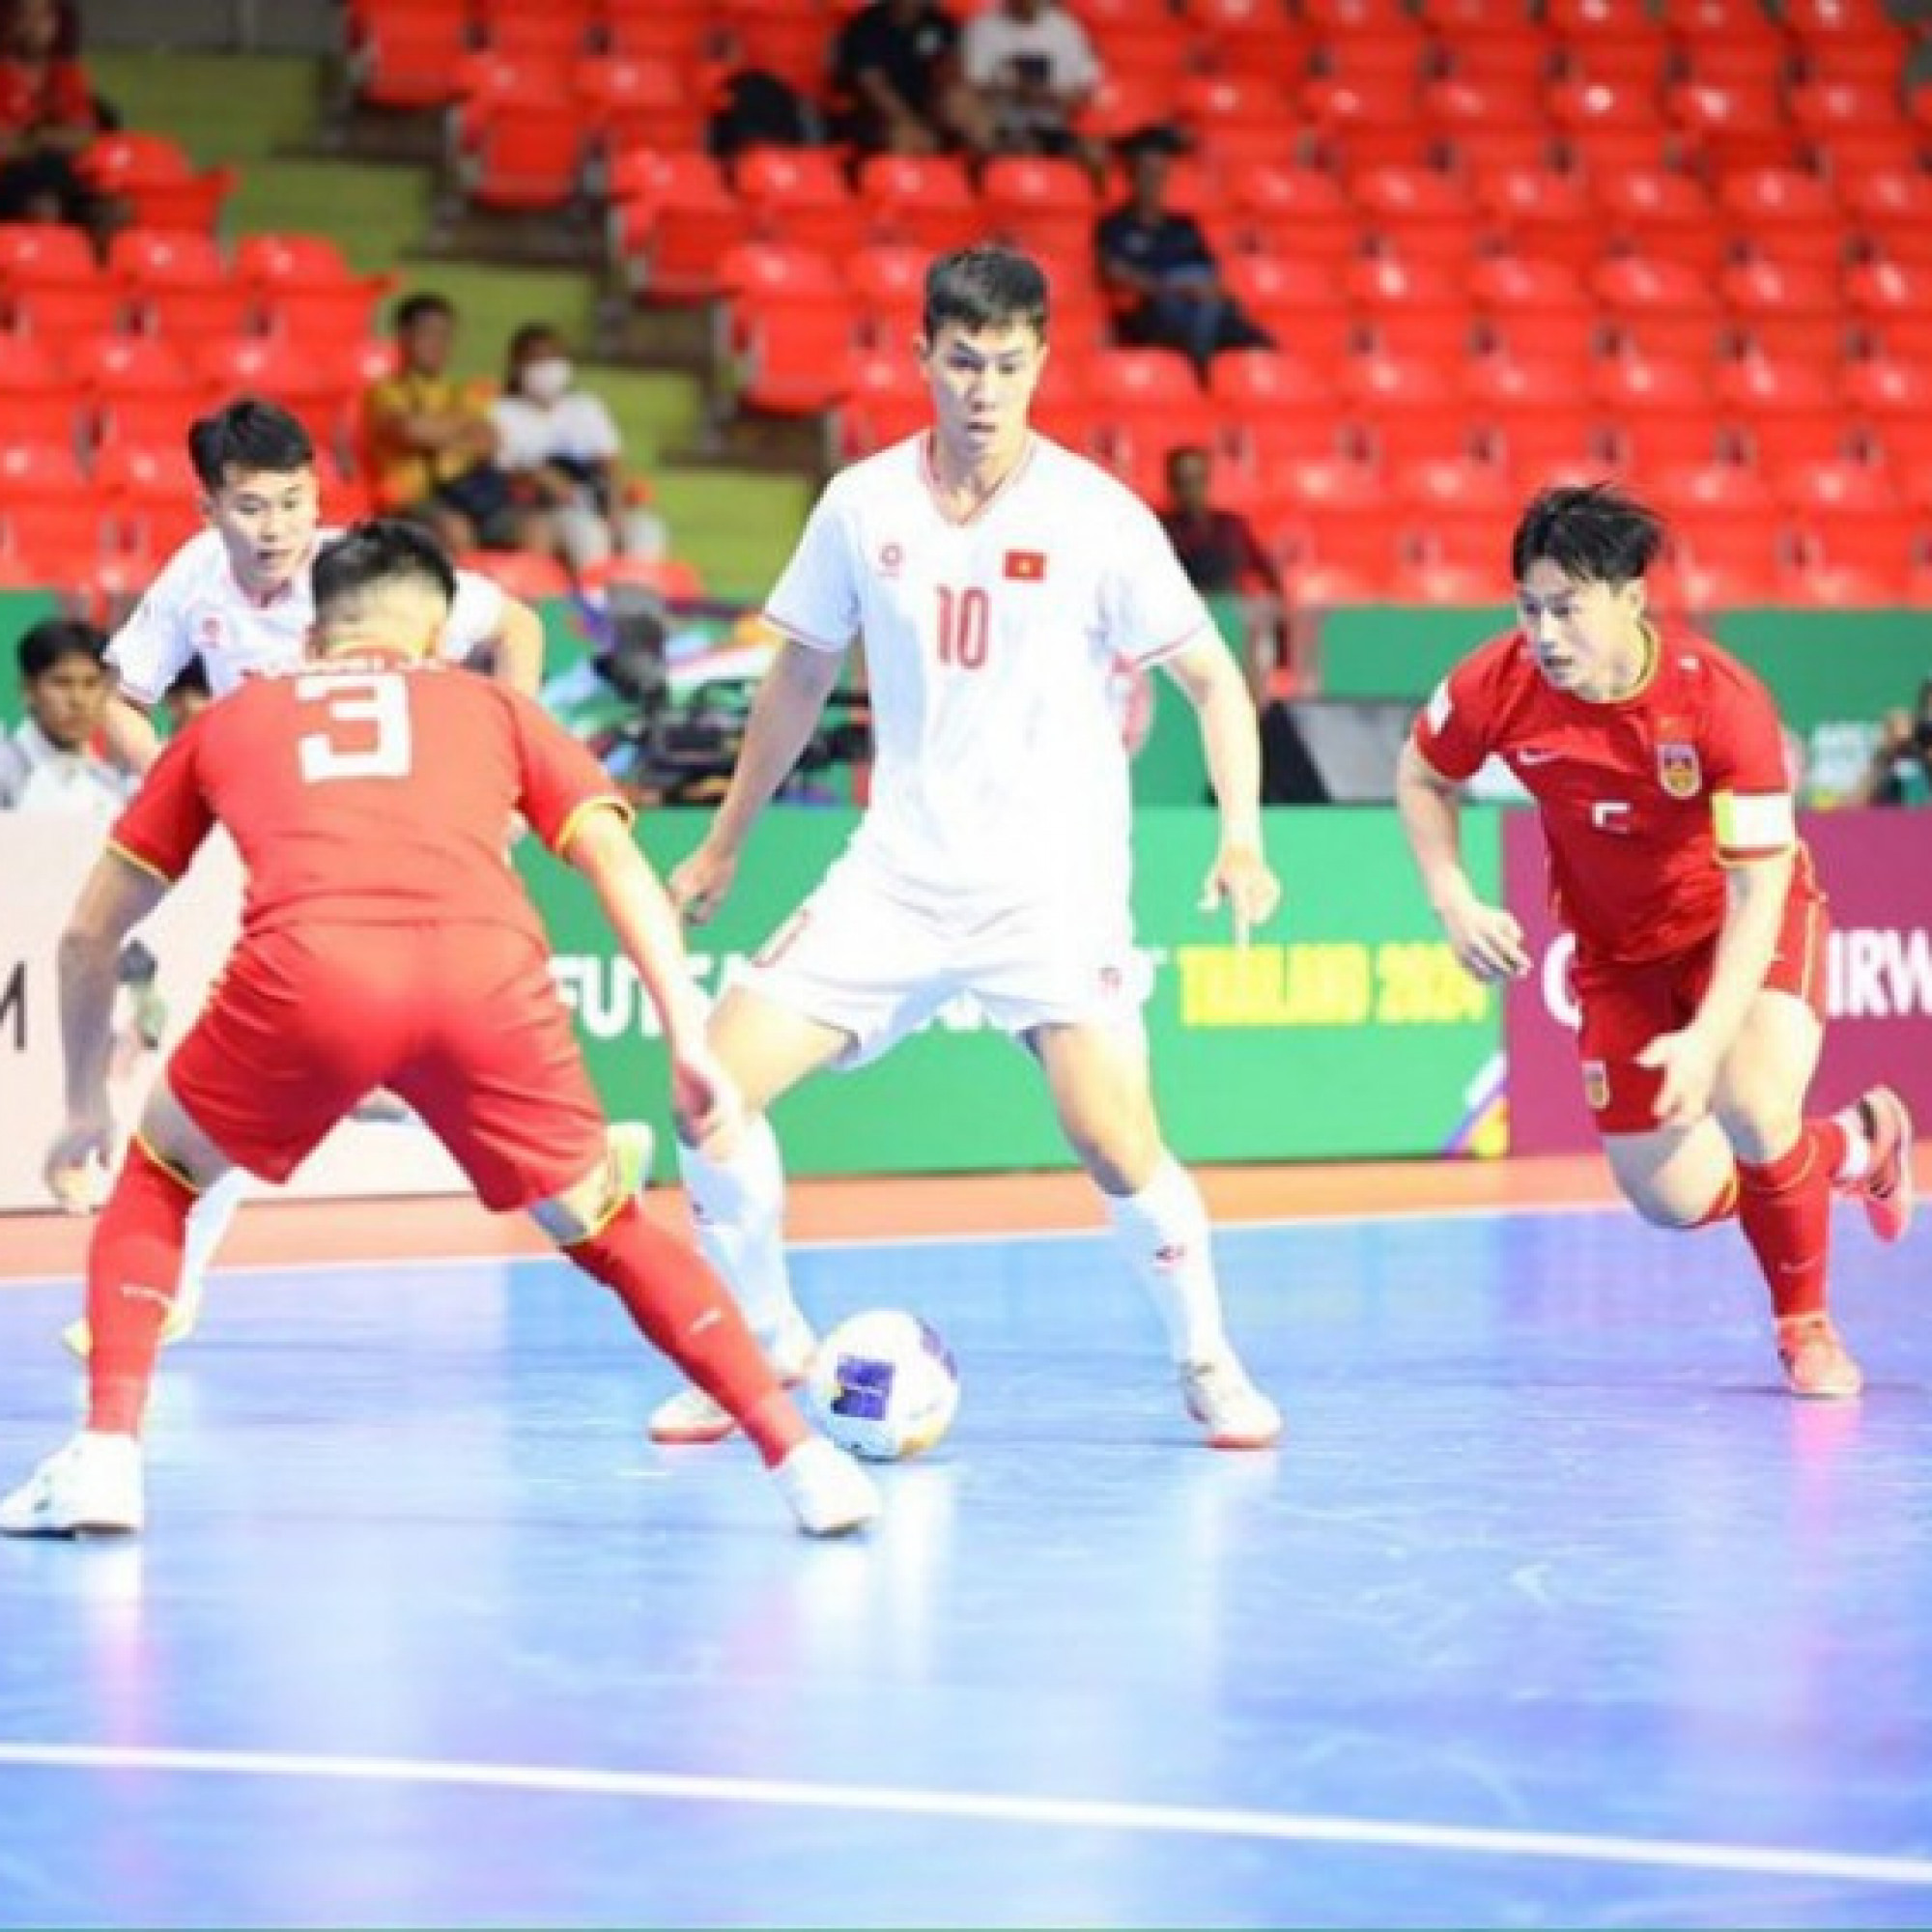  - Trực tiếp futsal ĐT Việt Nam - ĐT Trung Quốc: Cột dọc giải cứu ĐT Việt Nam (Futsal châu Á) (Hết giờ)